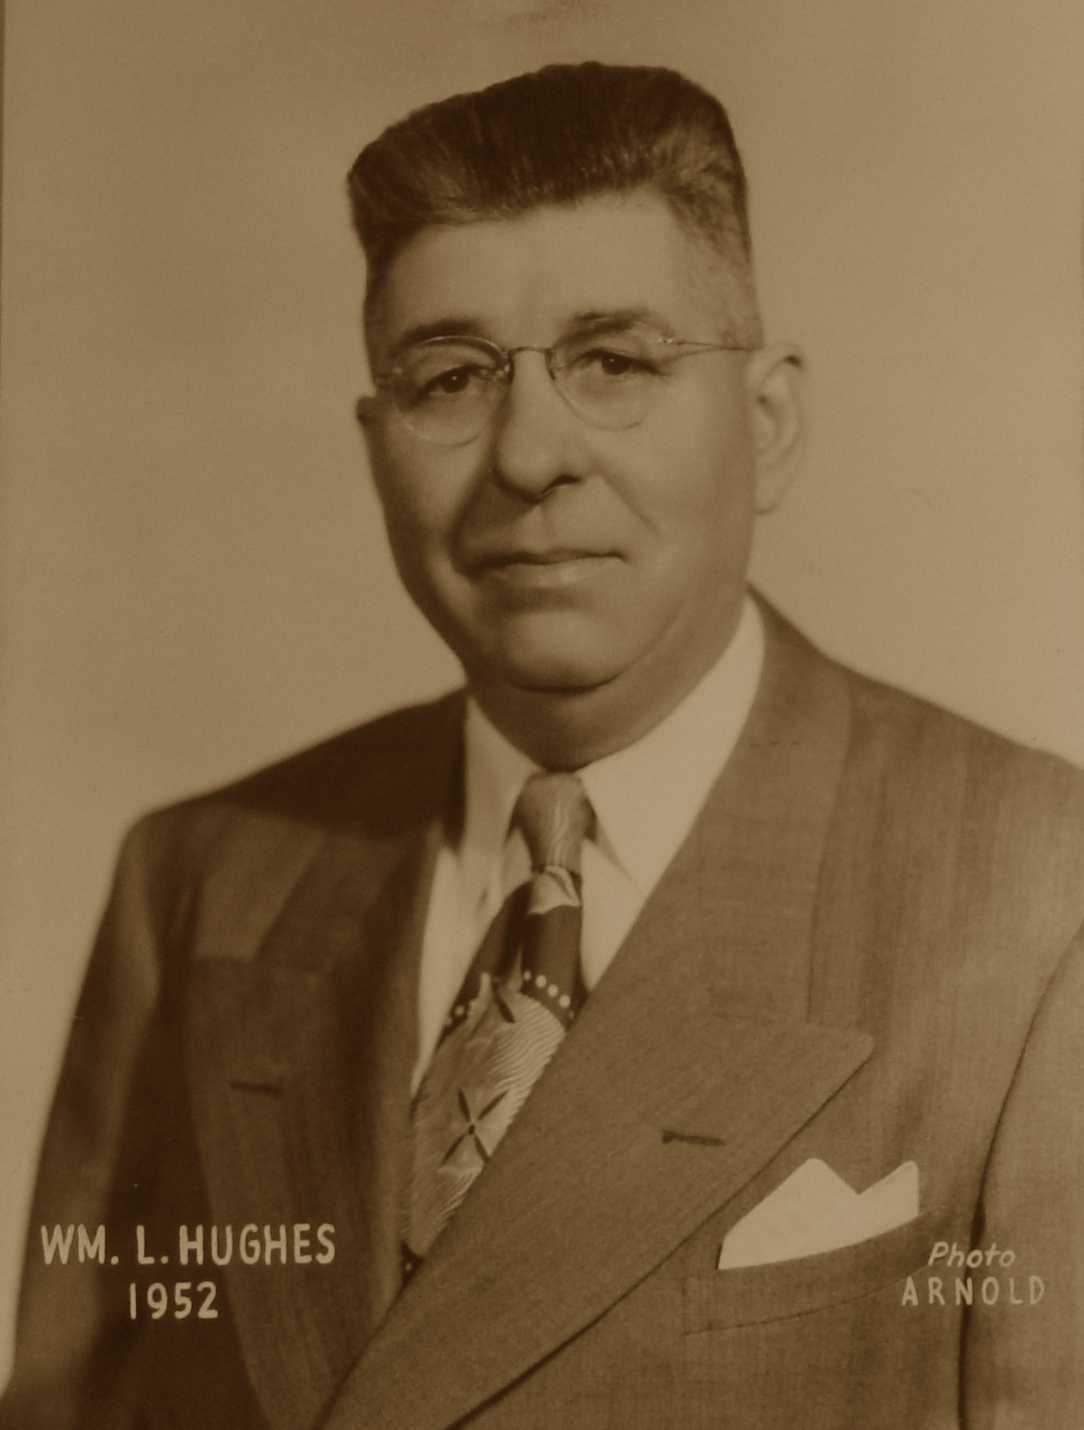 William L. Hughes, 1952